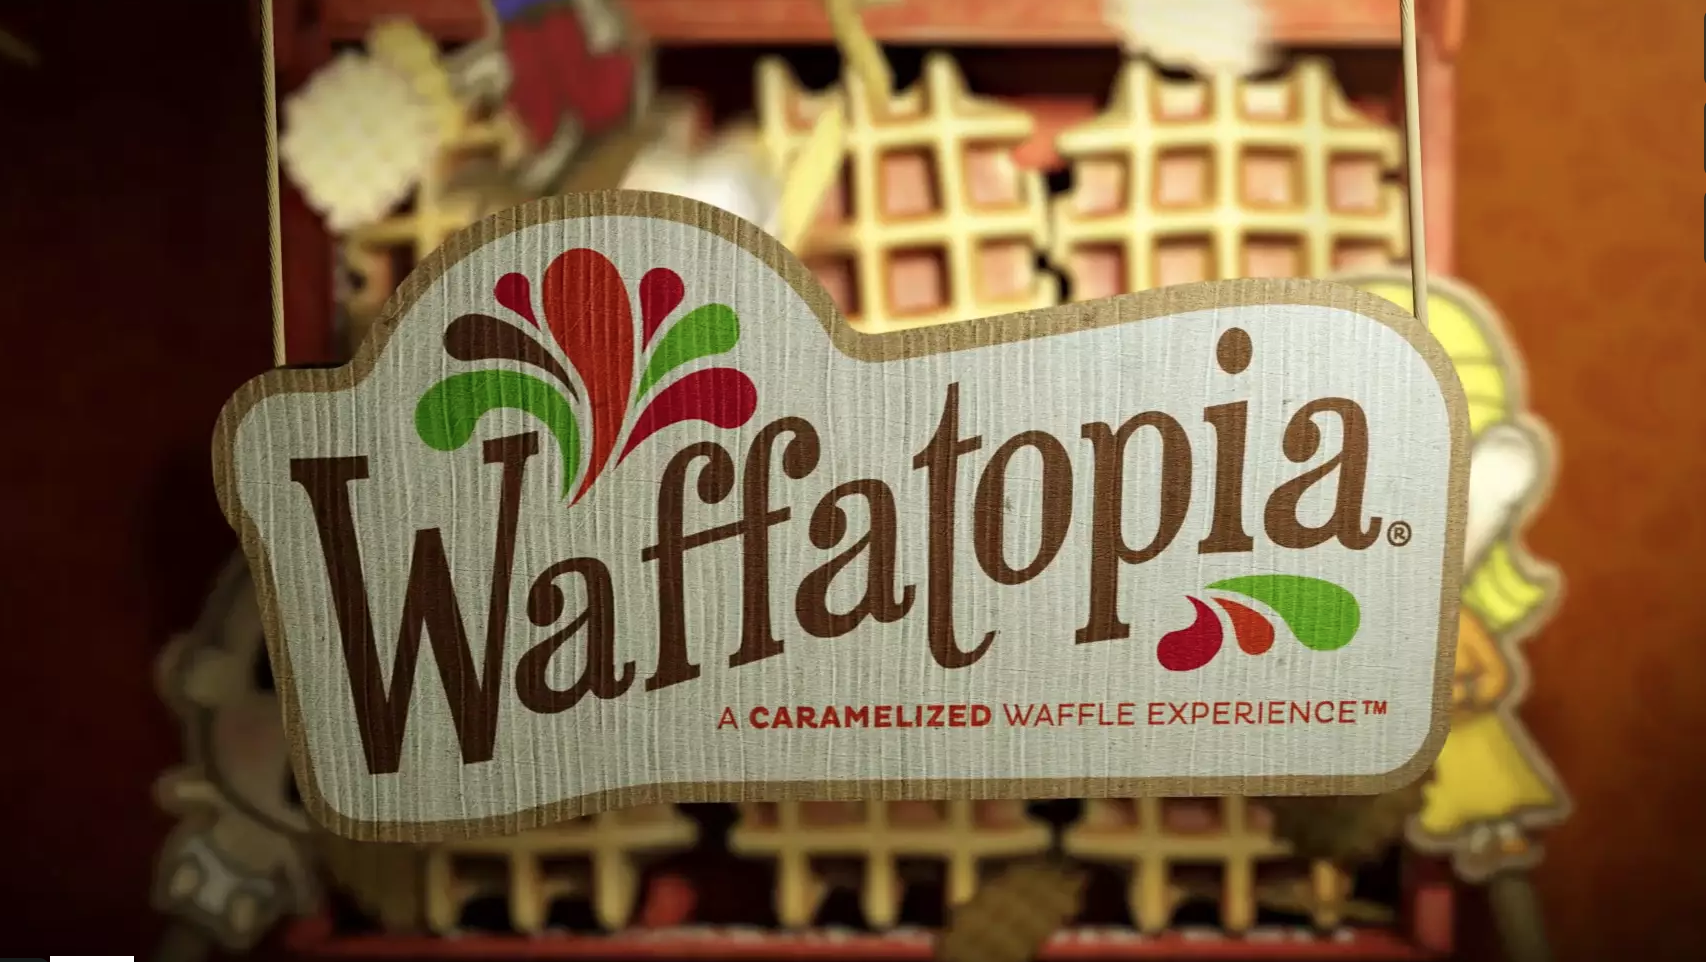 Waffles from Waffatopia!